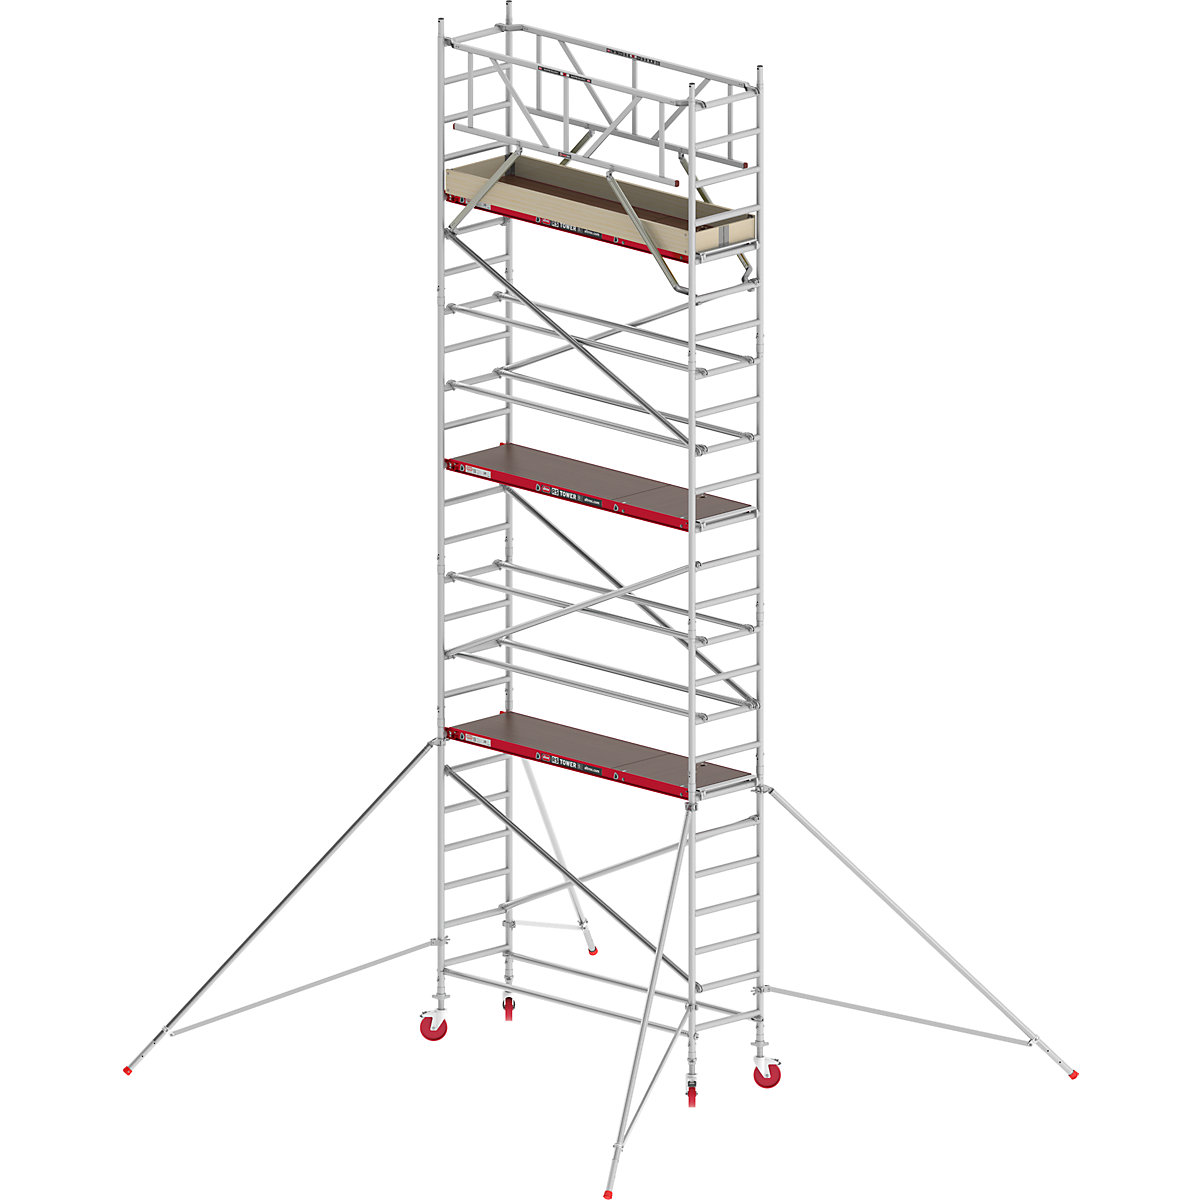 Pomičen oder RS TOWER 41, ozek – Altrex, lesena ploščad, dolžina 1,85 m, delovna višina 8,20 m